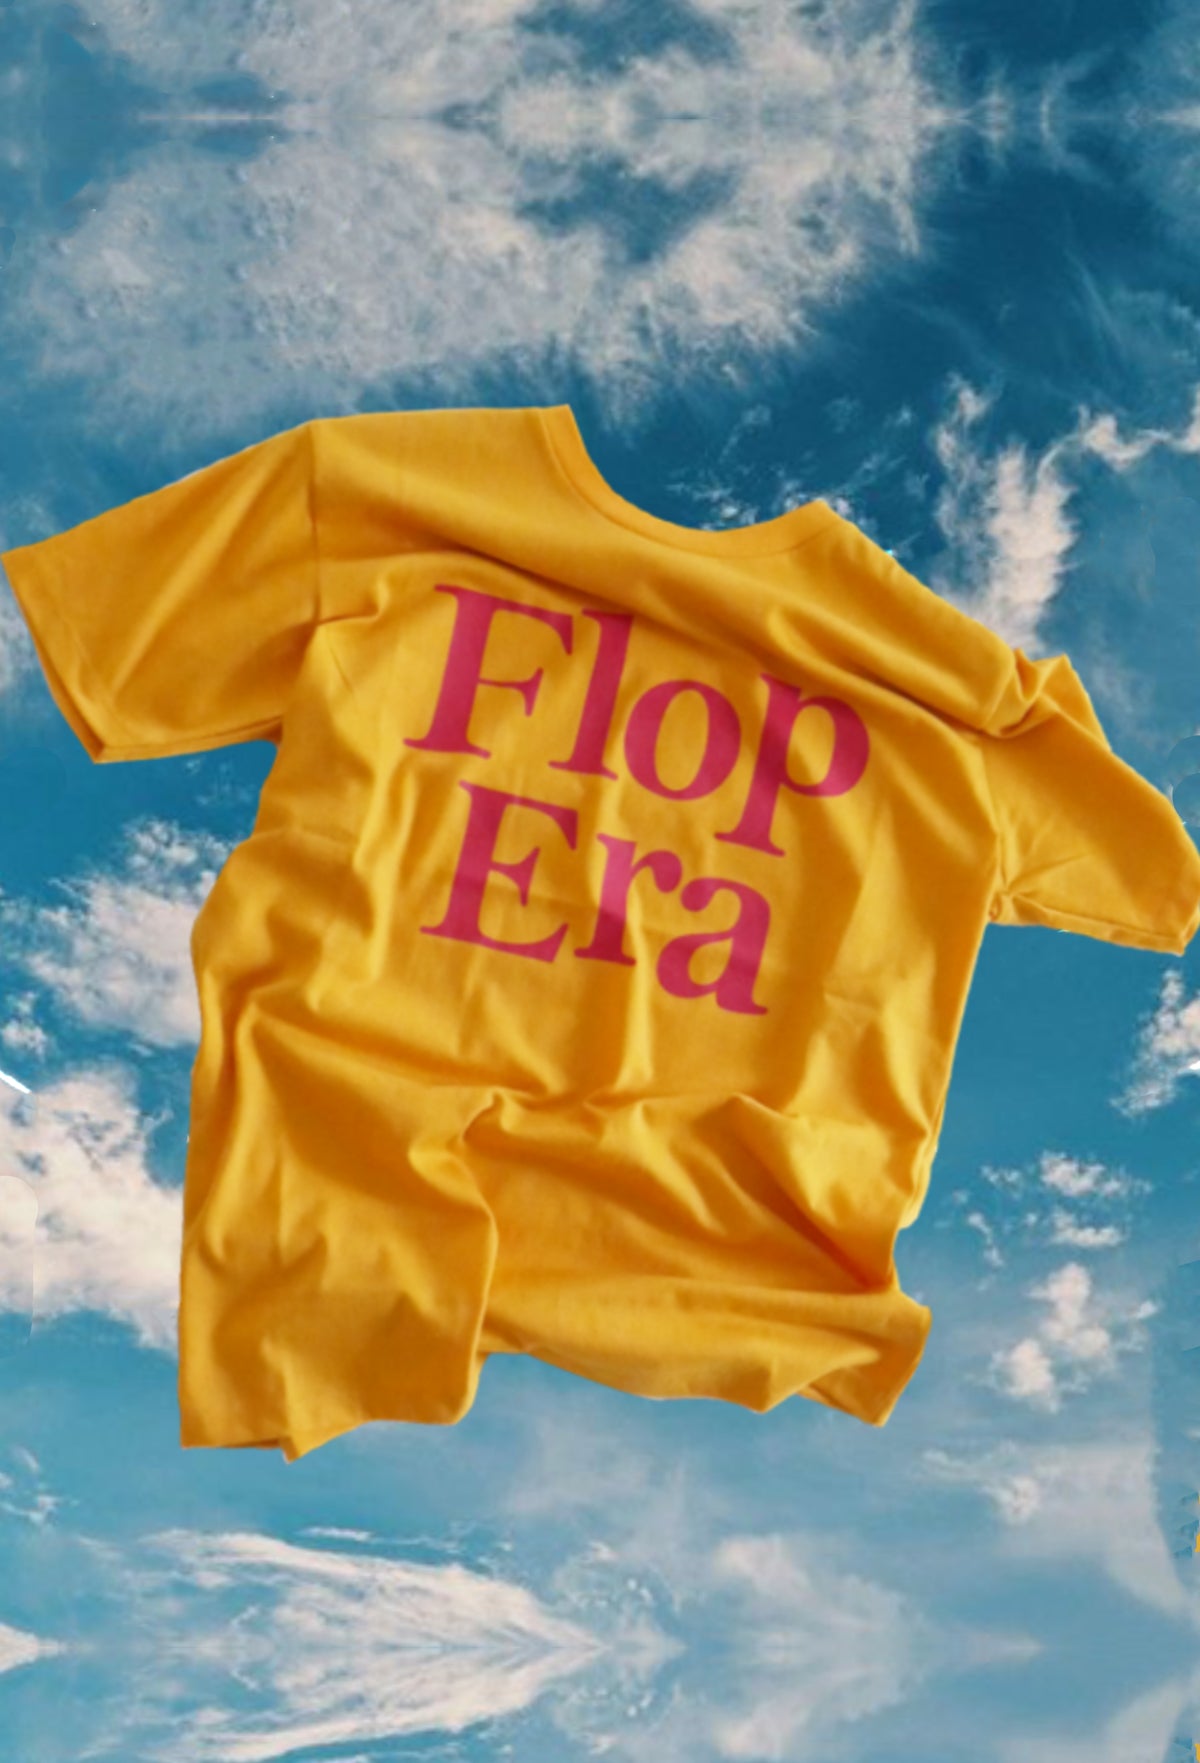 Flop Era T-shirt